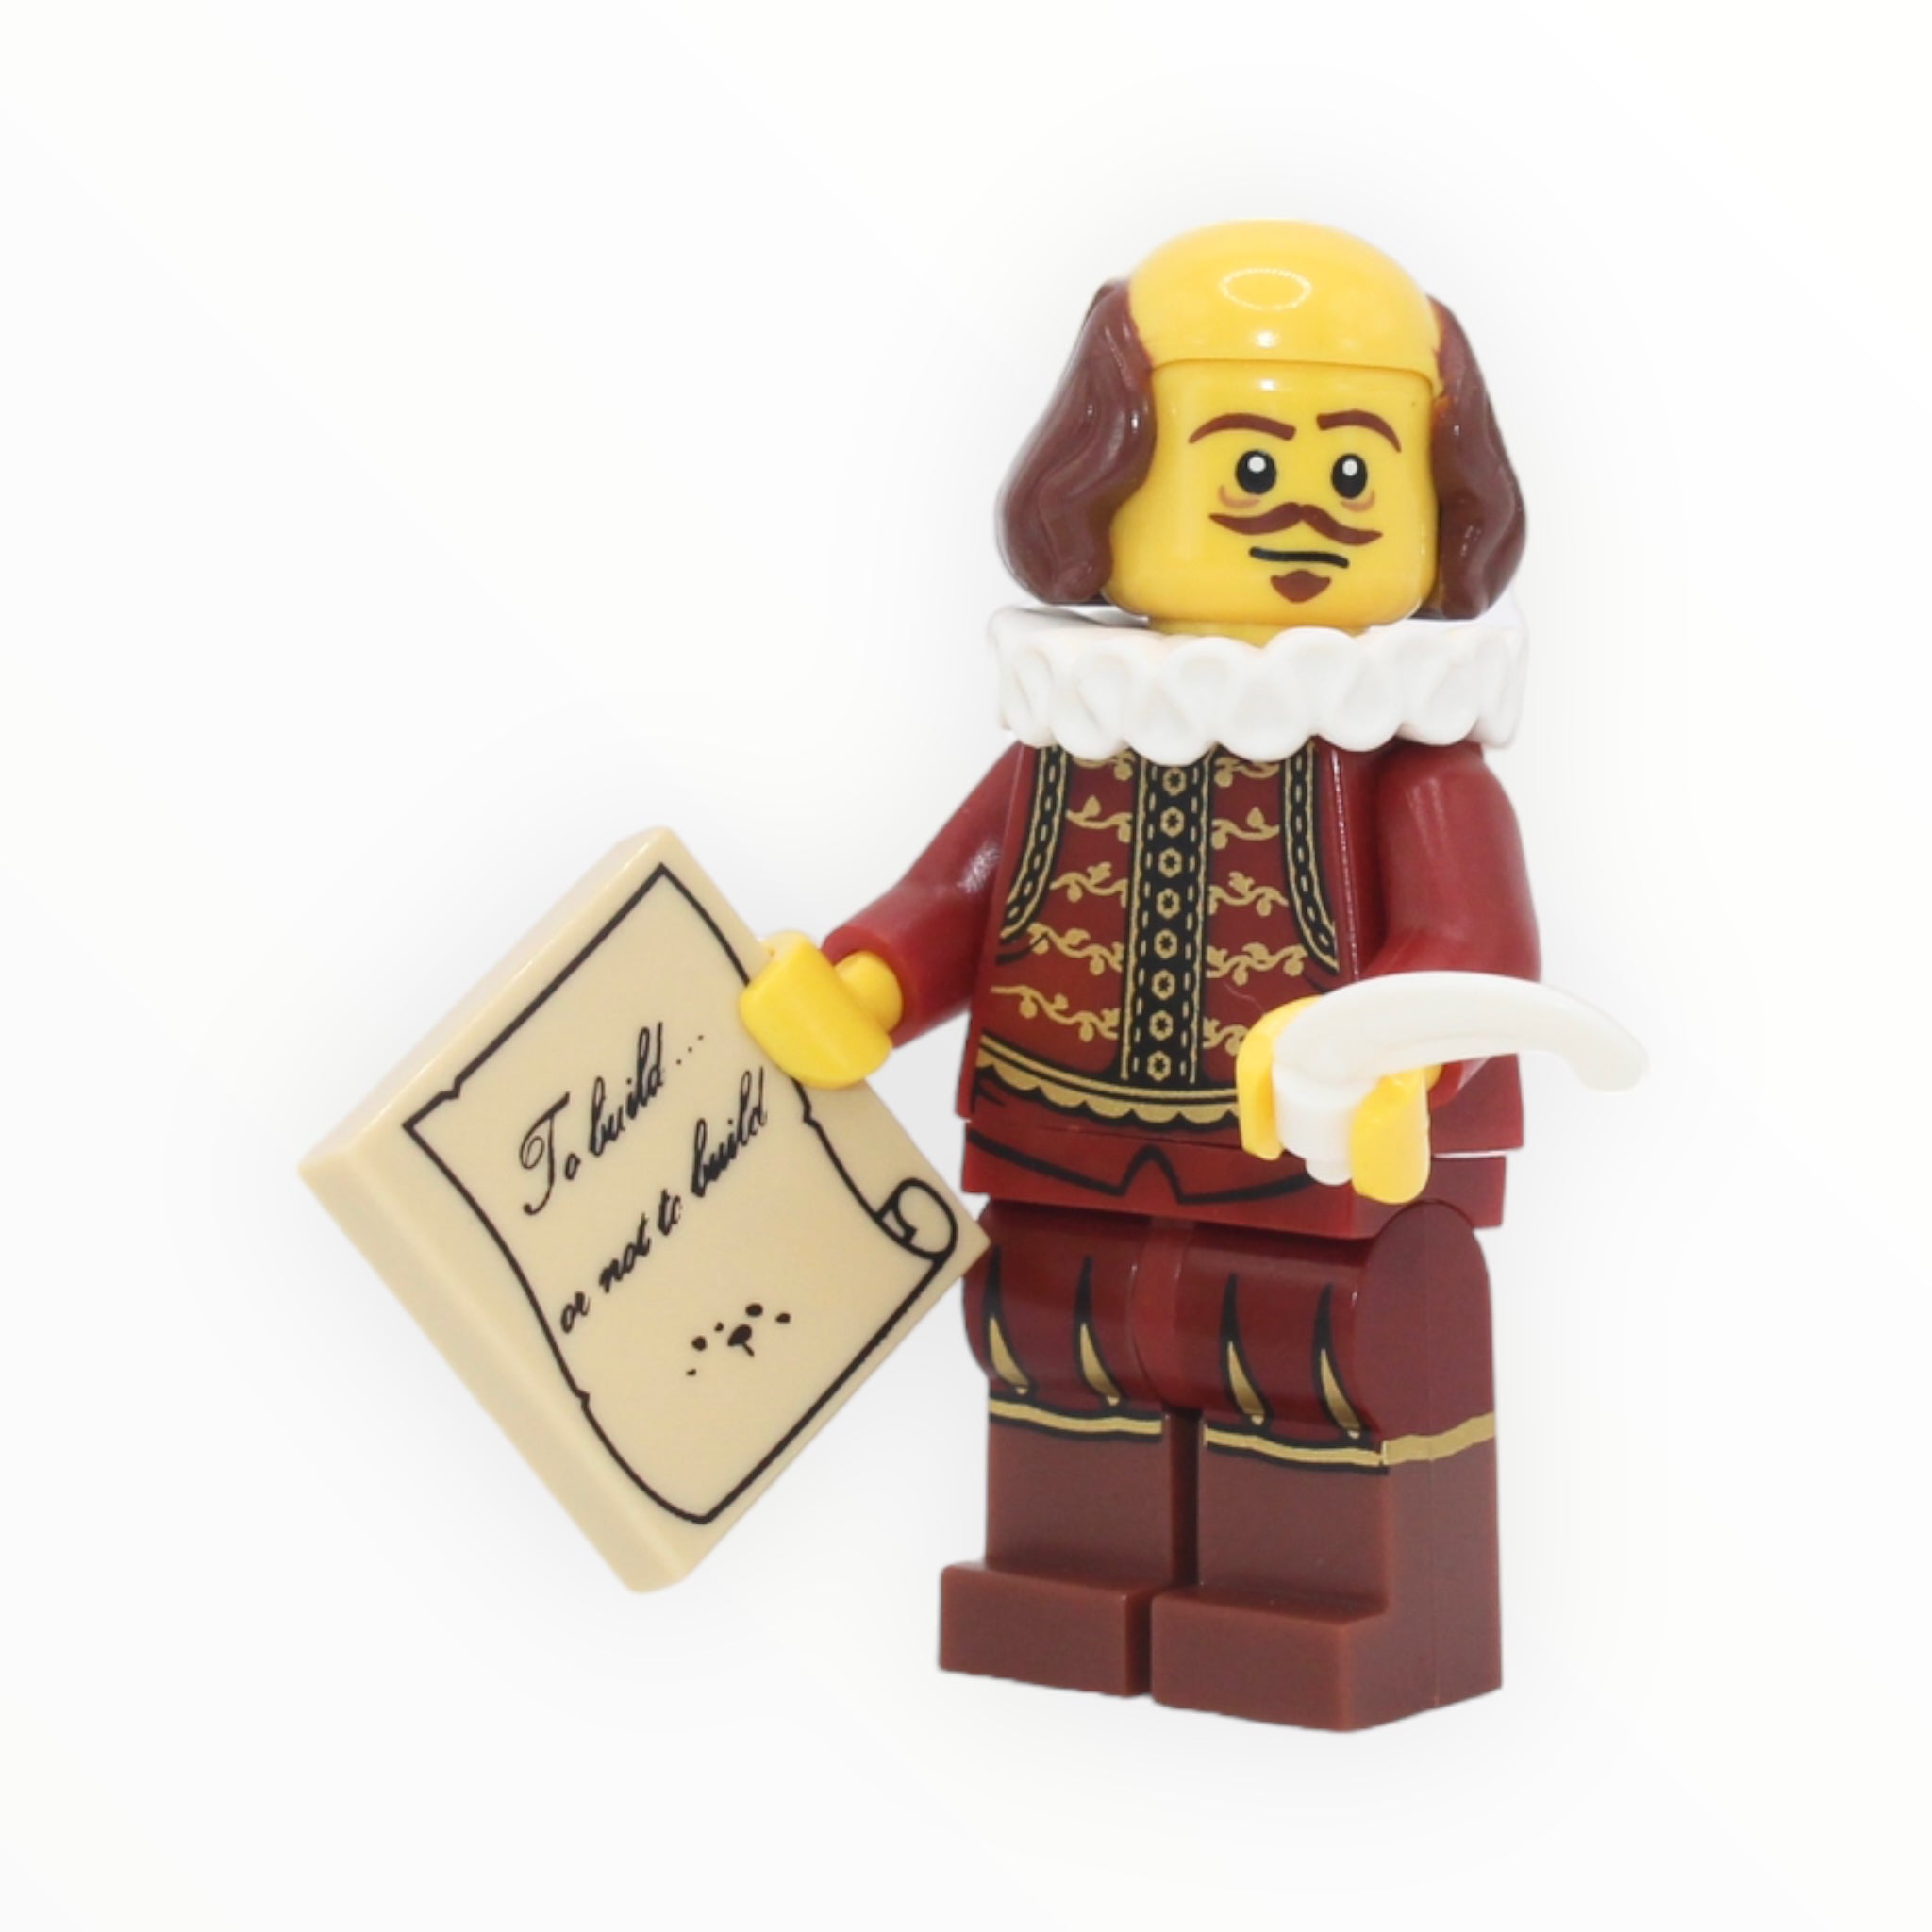 LEGO Movie Series: William Shakespeare